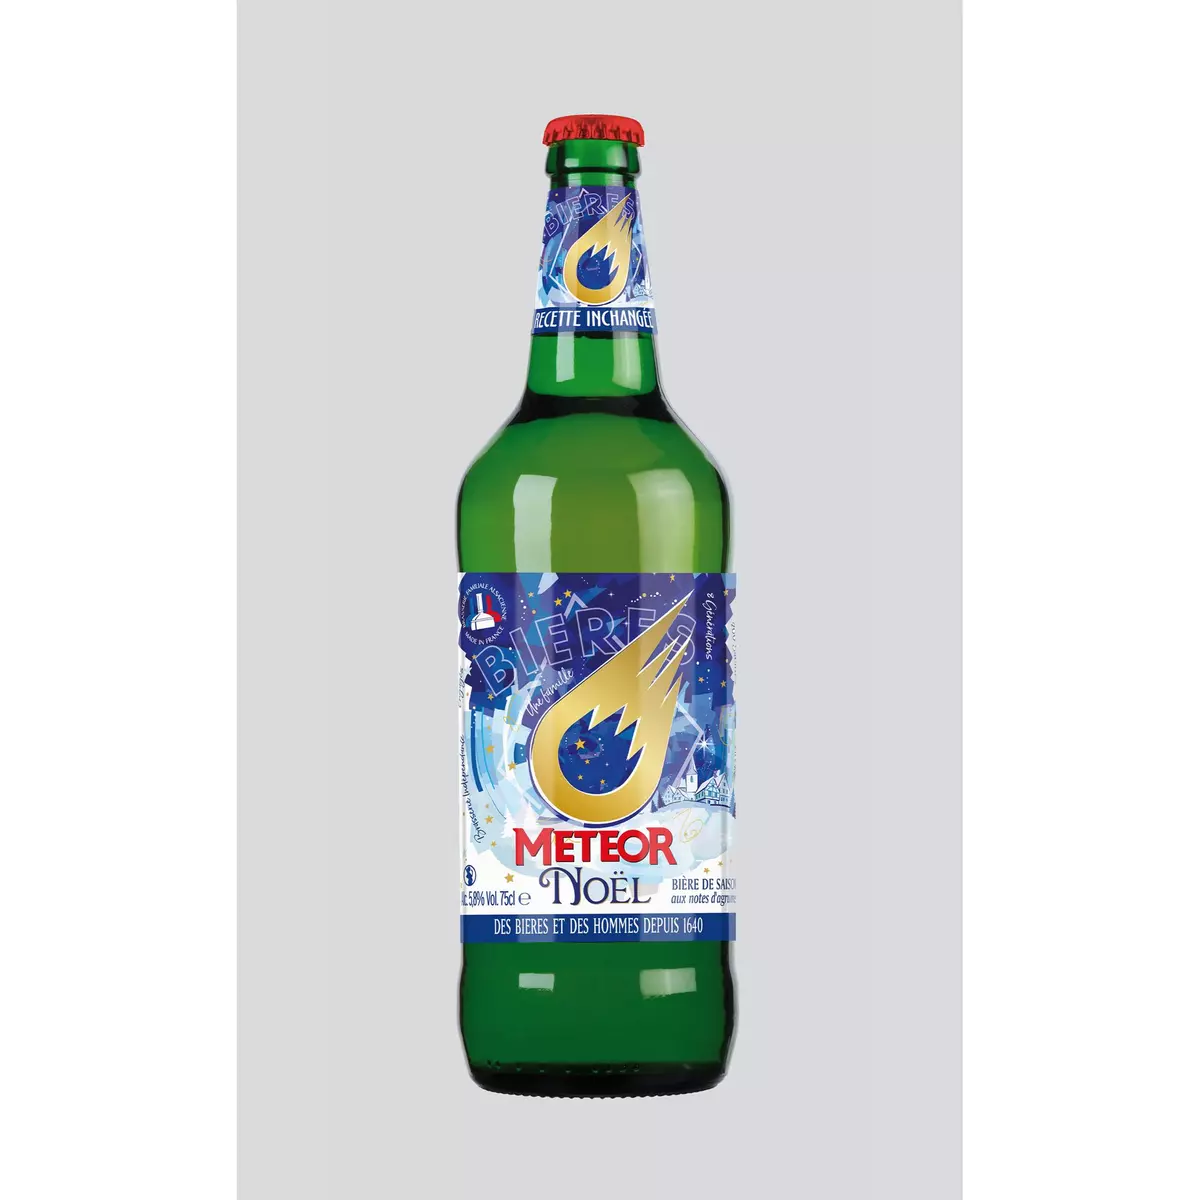 METEOR Bière de Noël alsacienne 5,8% bouteille 75cl